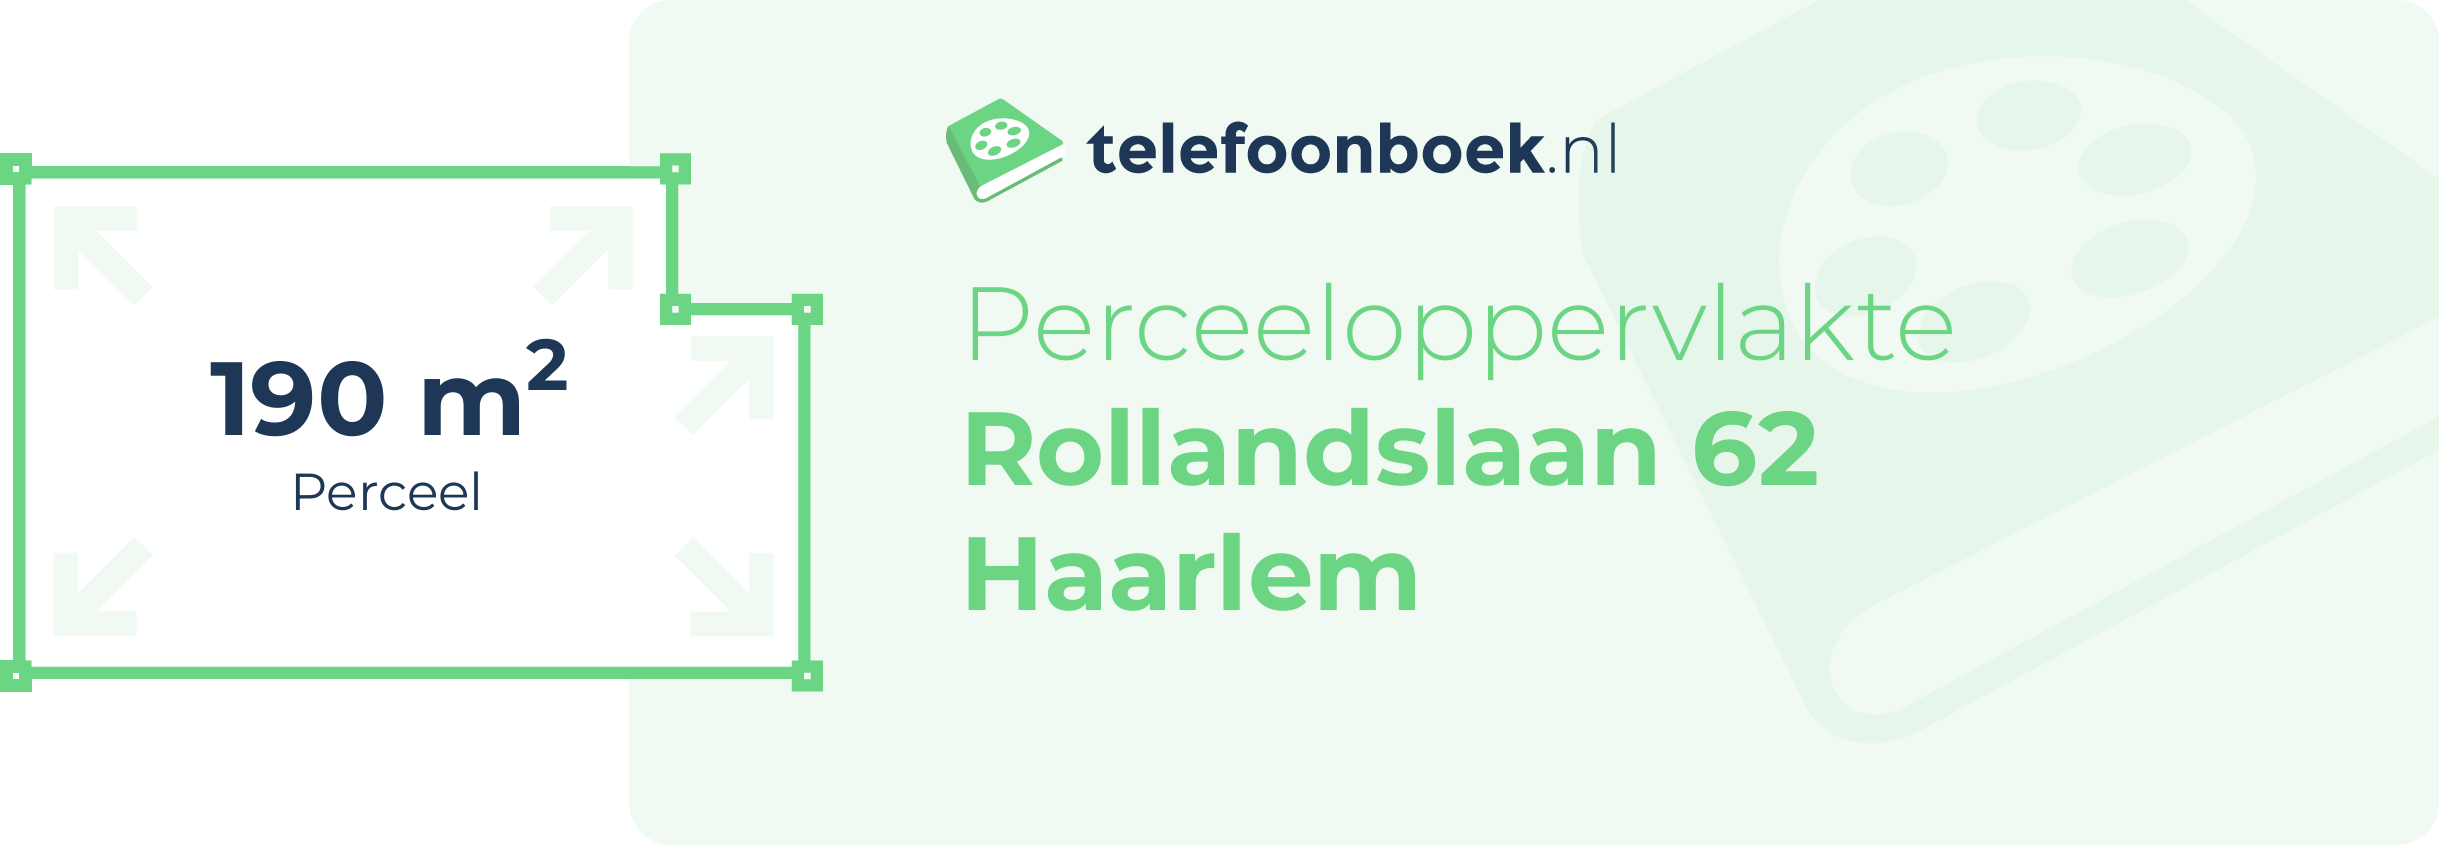 Perceeloppervlakte Rollandslaan 62 Haarlem